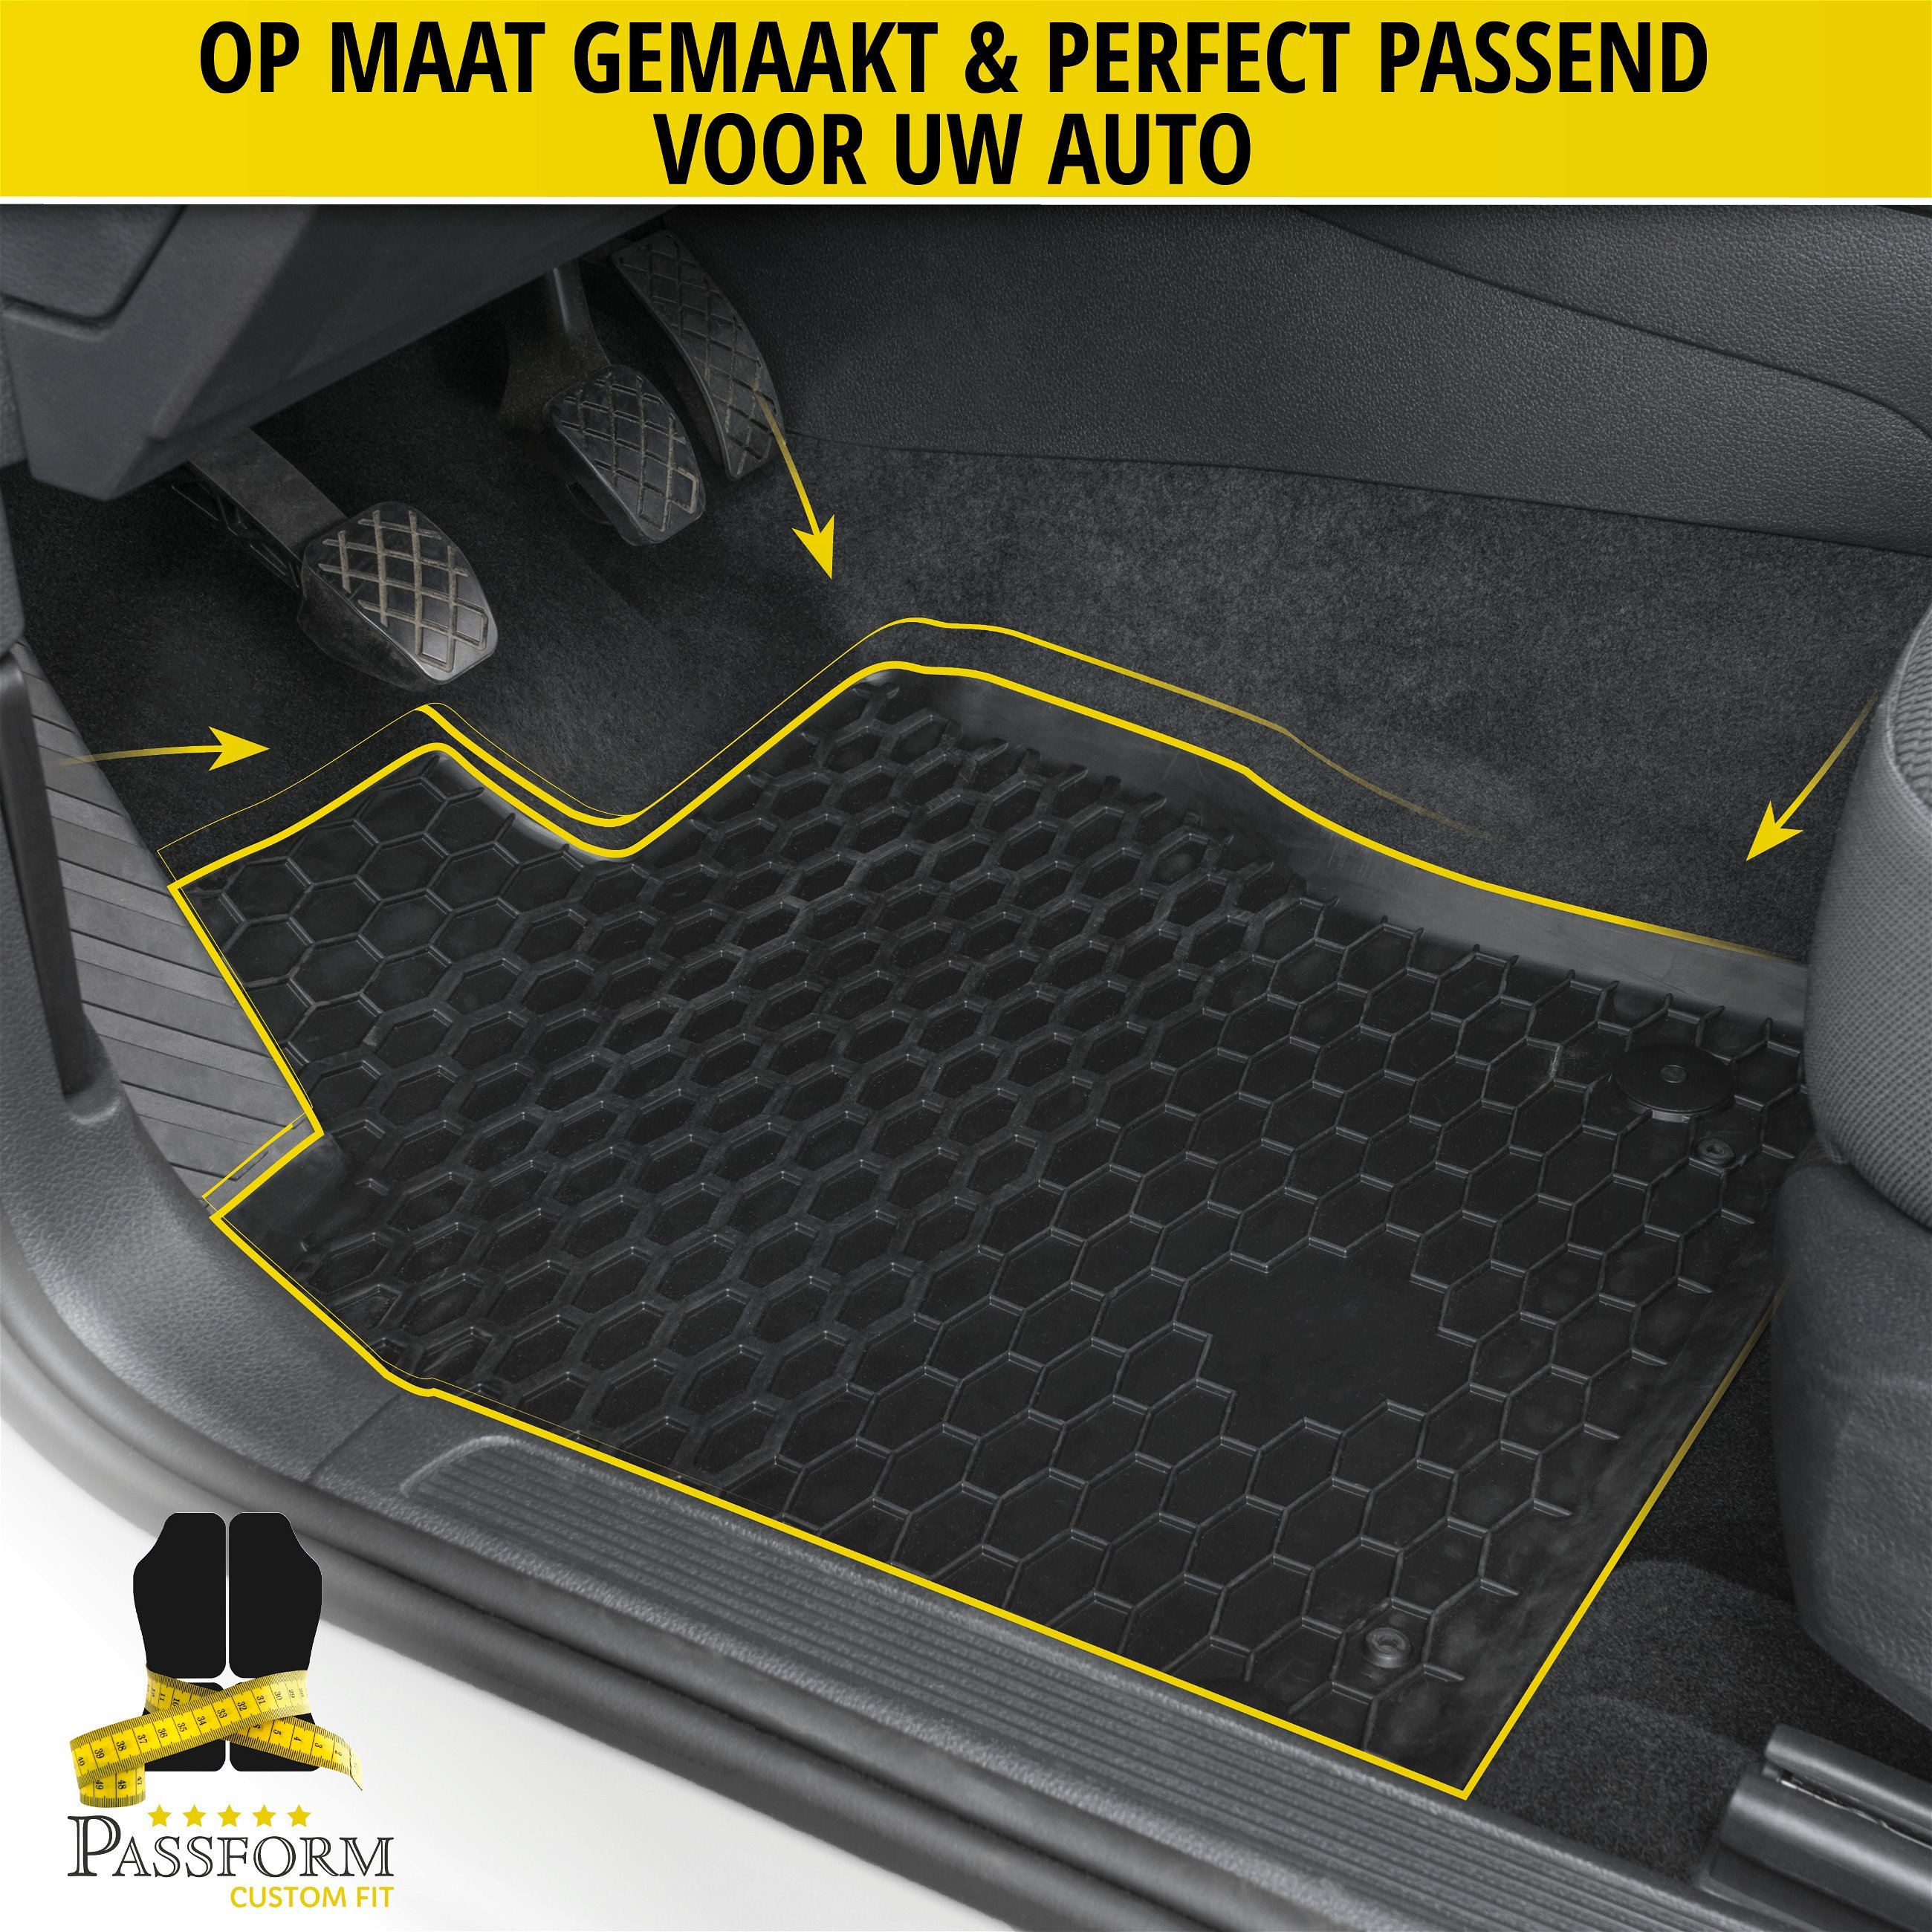 DirtGuard rubberen voetmatten geschikt voor VW Amarok 09/2010-2022, 4-delen